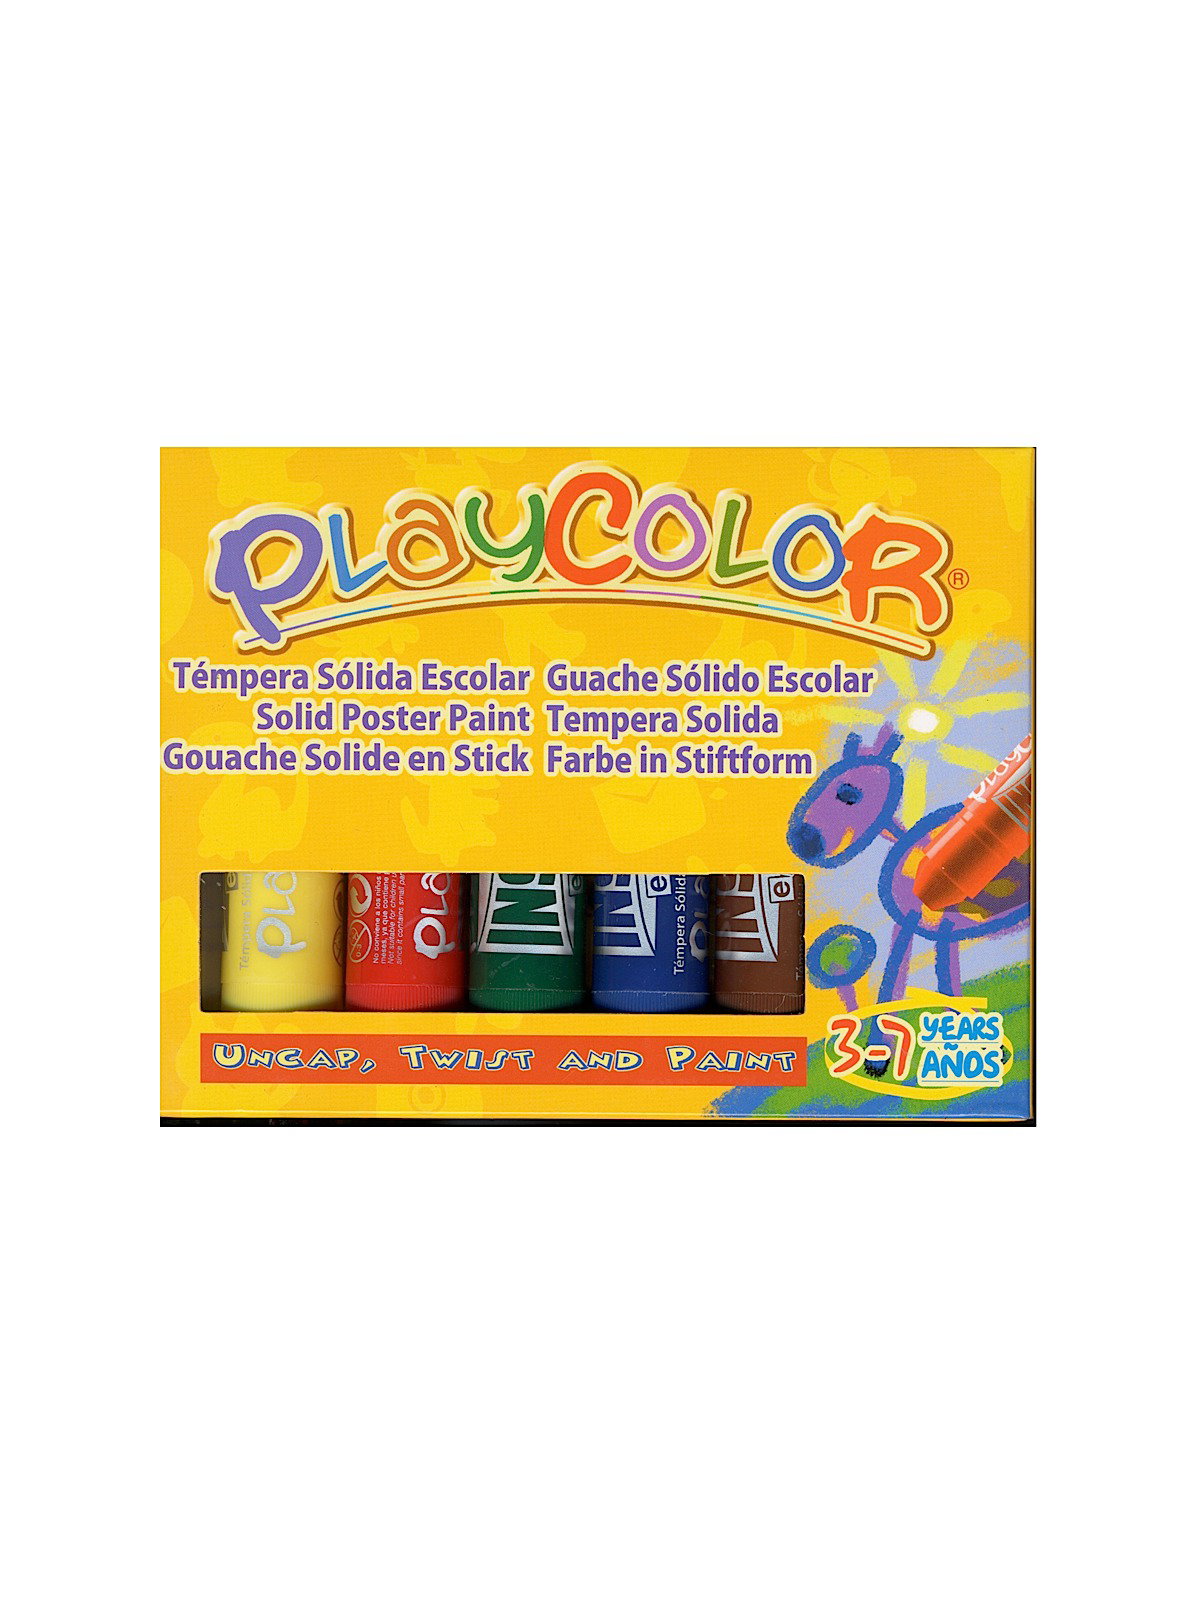 Playkidiz Paint Sticks, 6 Pack, Neon Colors, Twistable Crayon